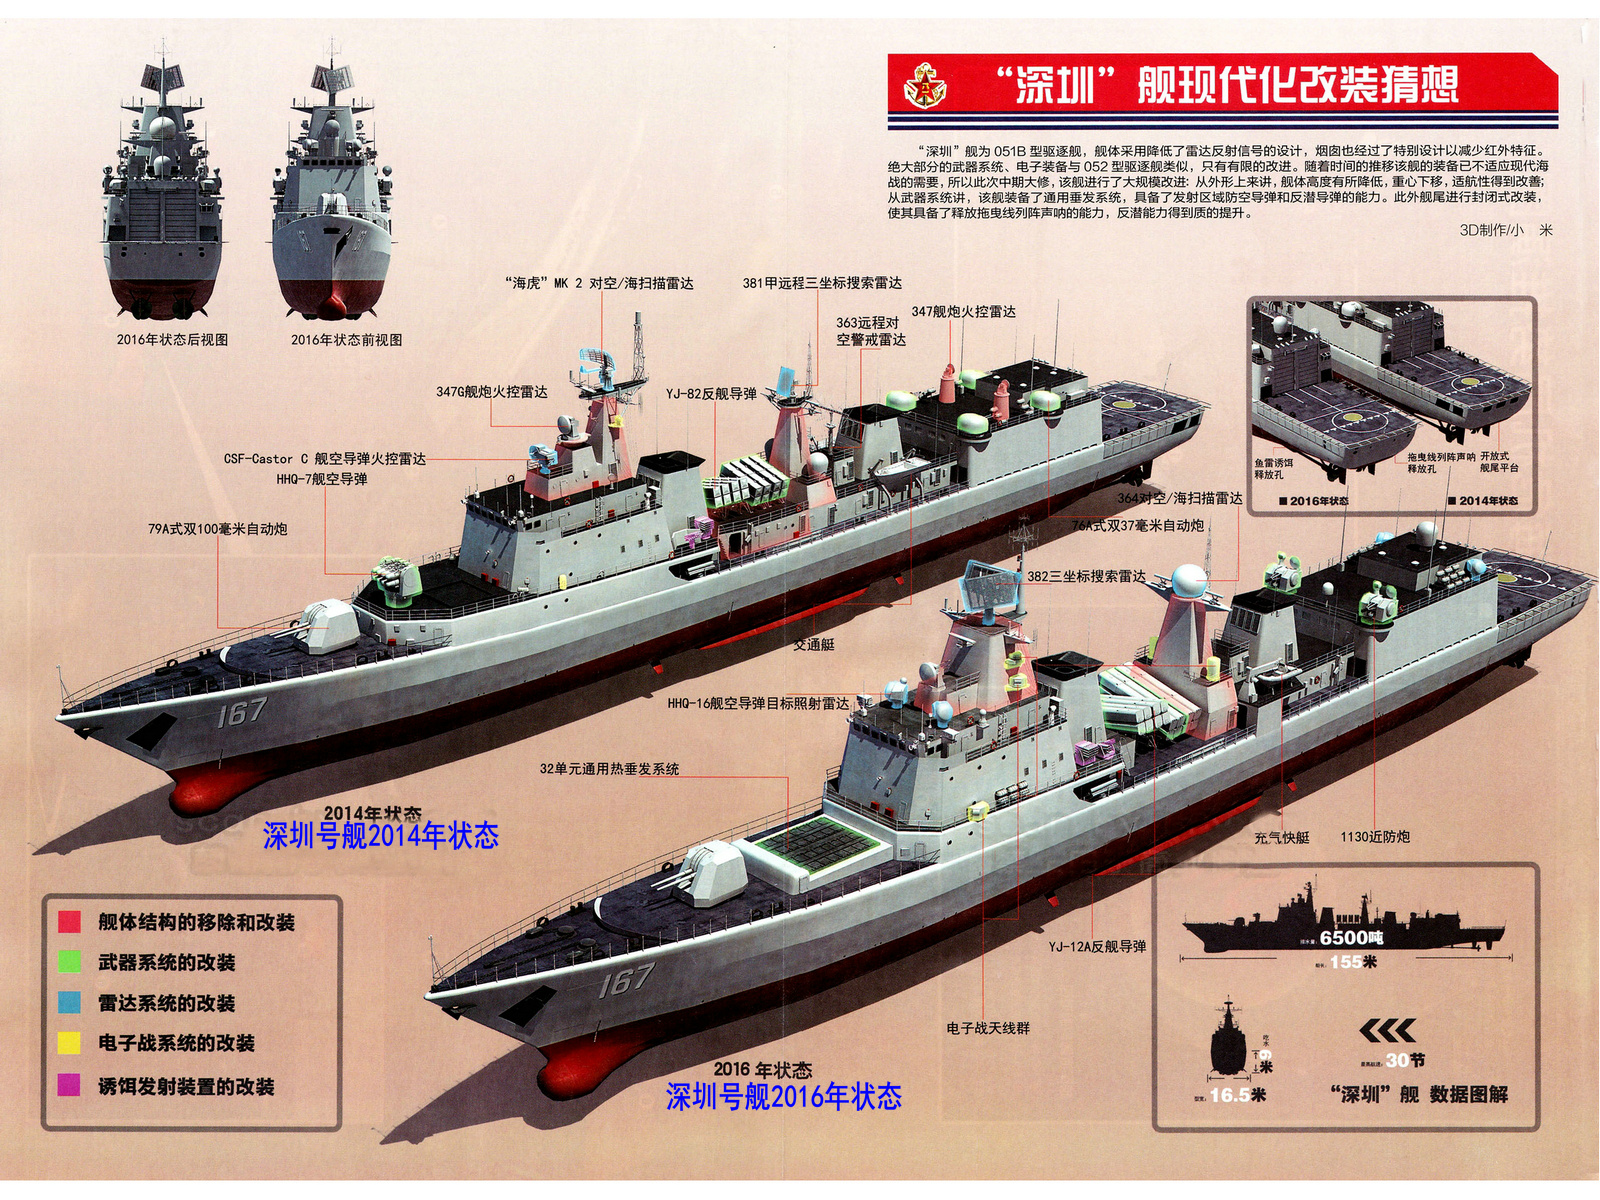 深圳號驅逐艦改裝前後比較示意圖